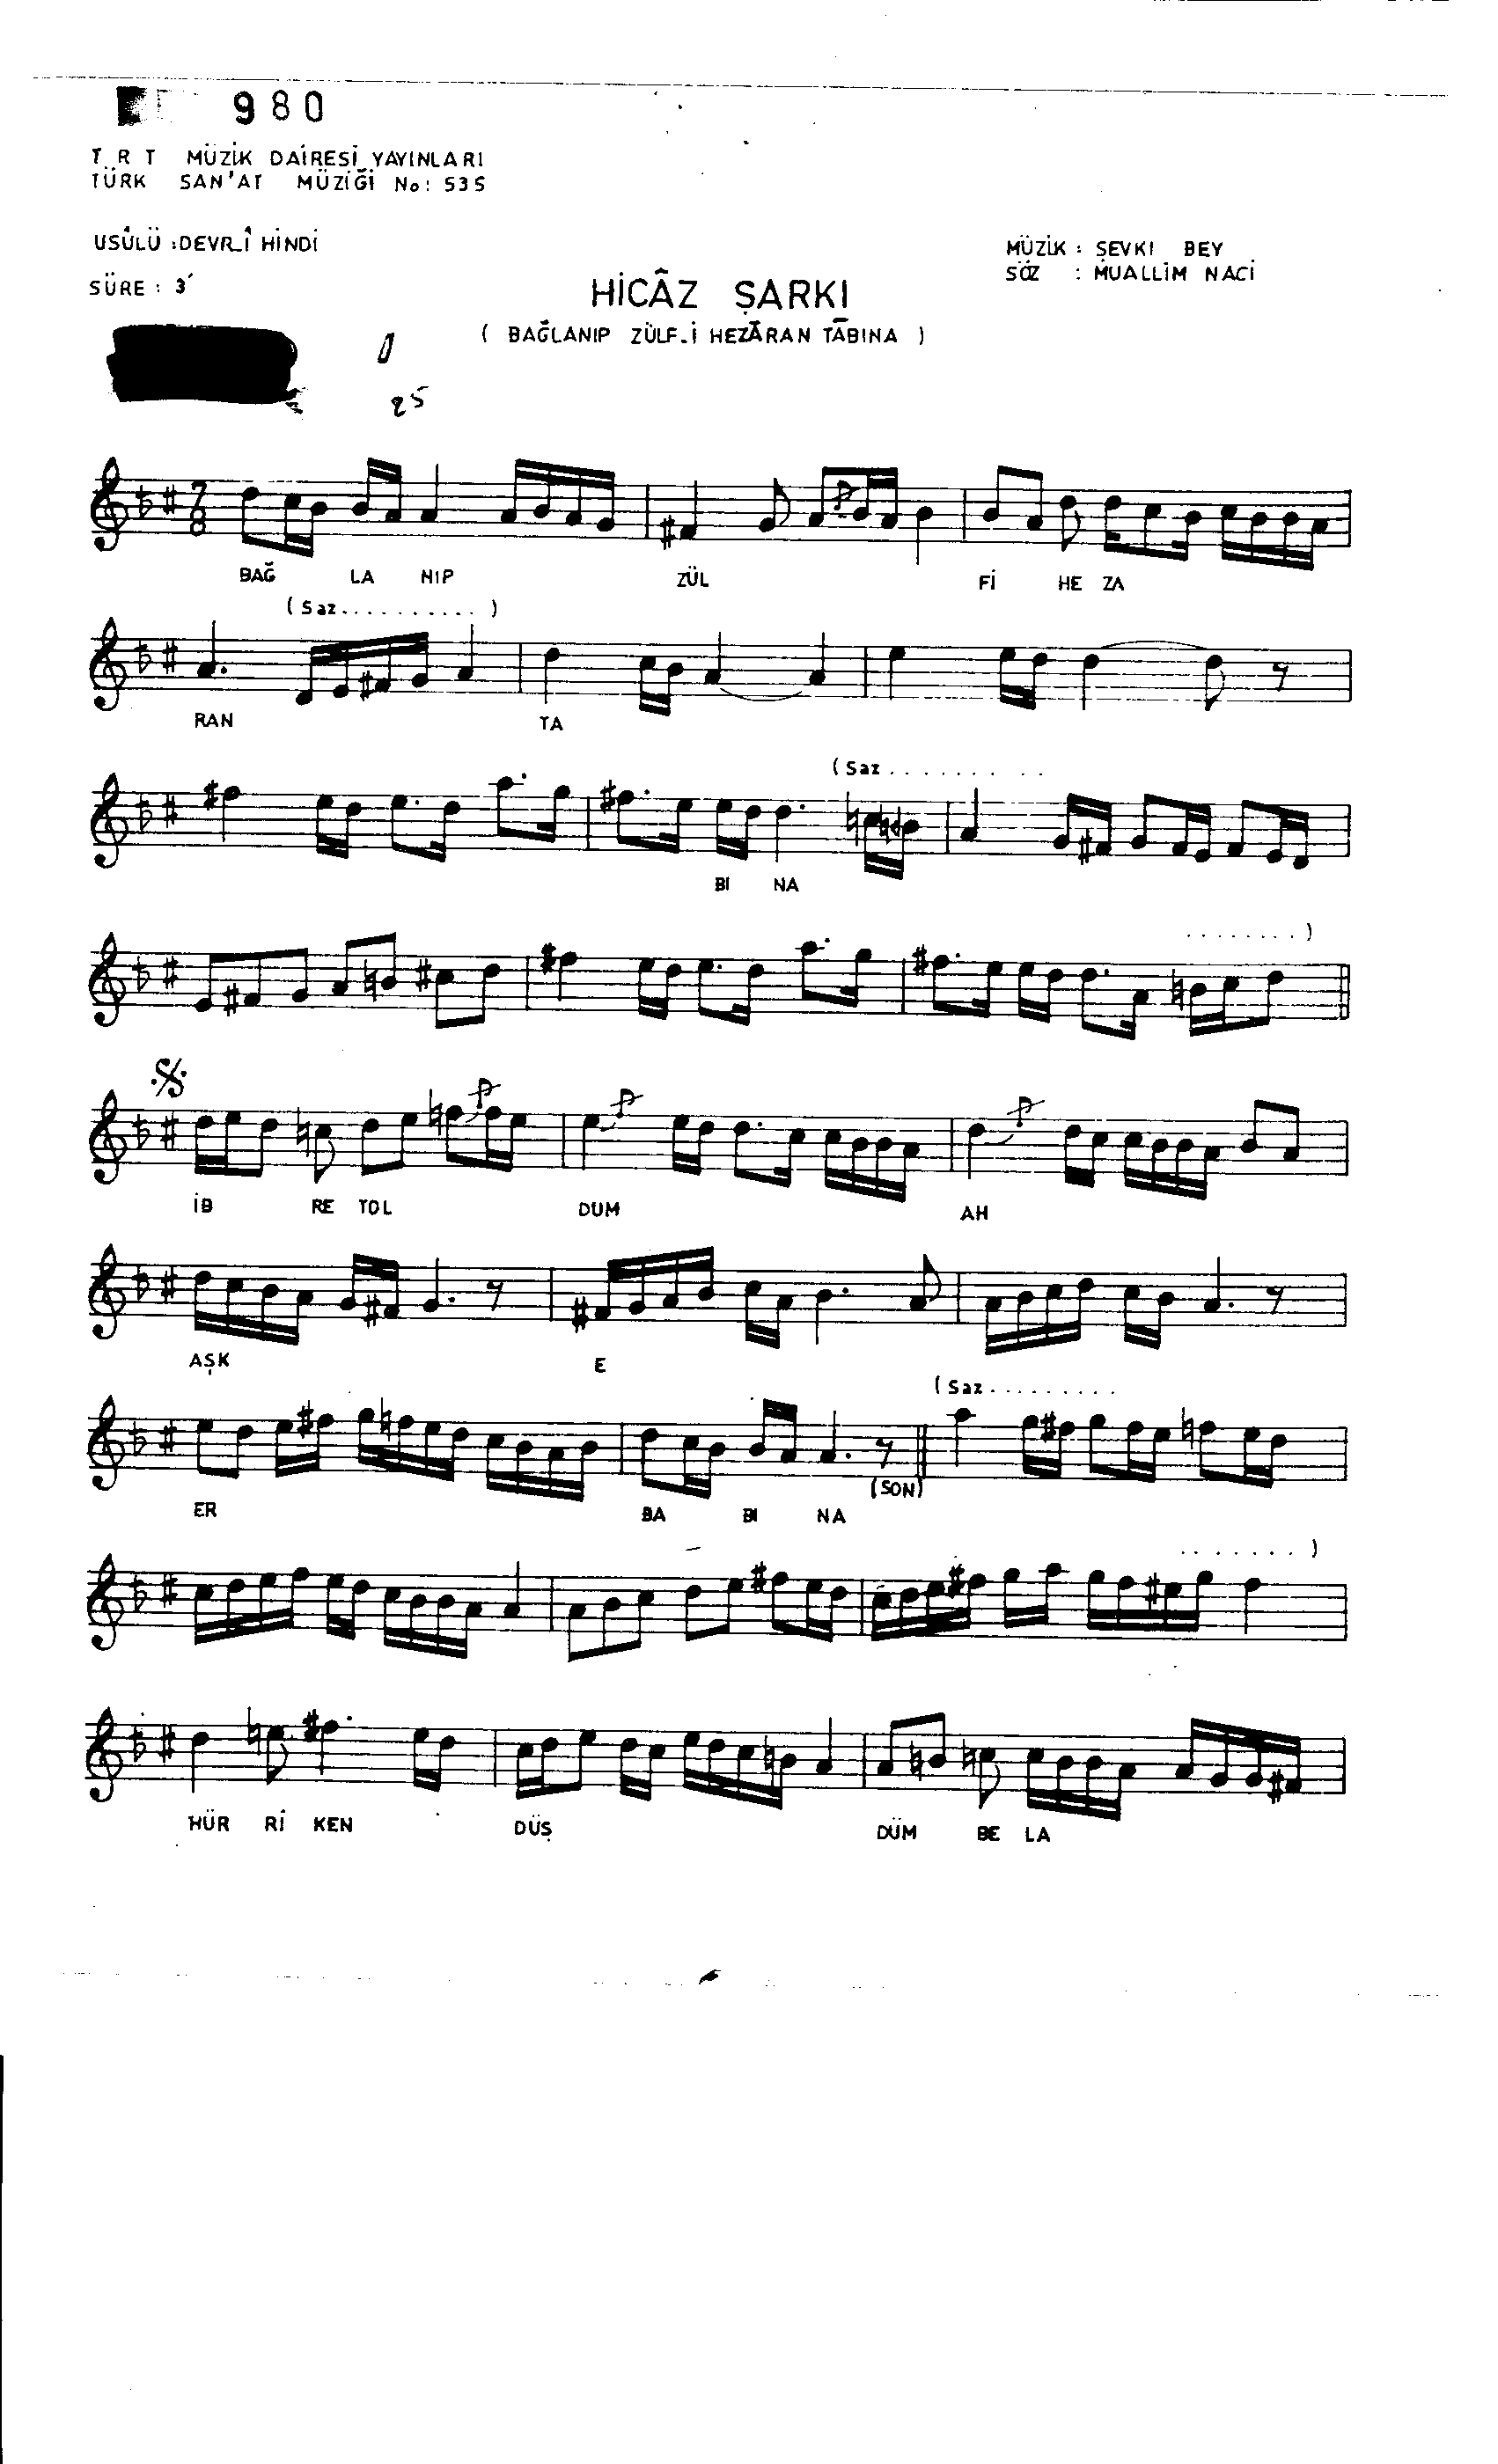 Hicâz - Şarkı - Şevkî Bey - Sayfa 1